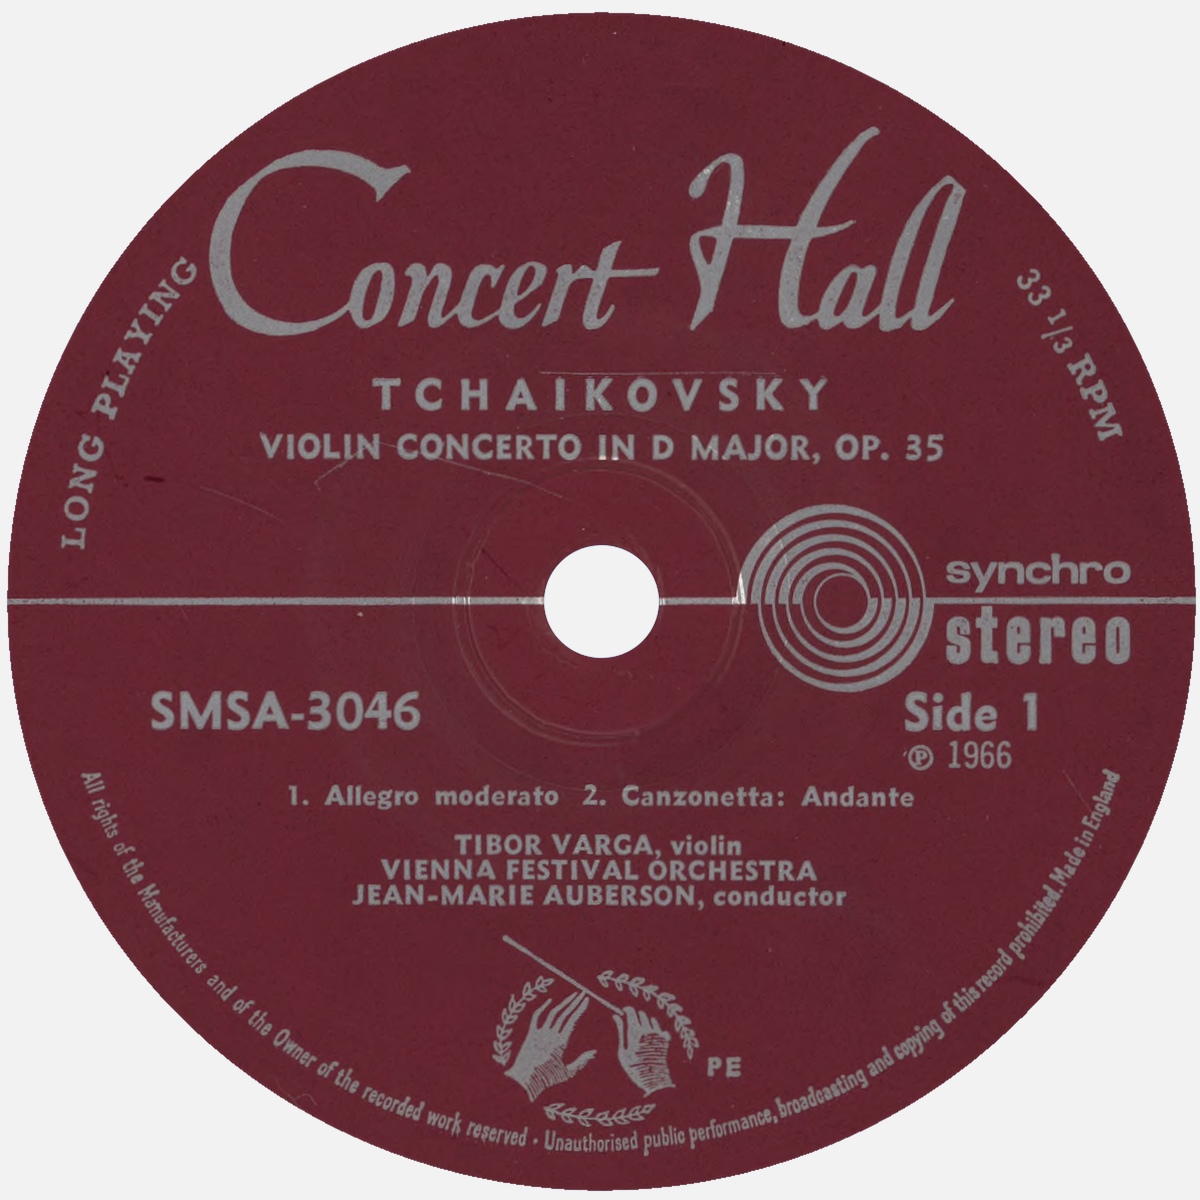 Étiquette recto du disque Concert Hall SMS 3046